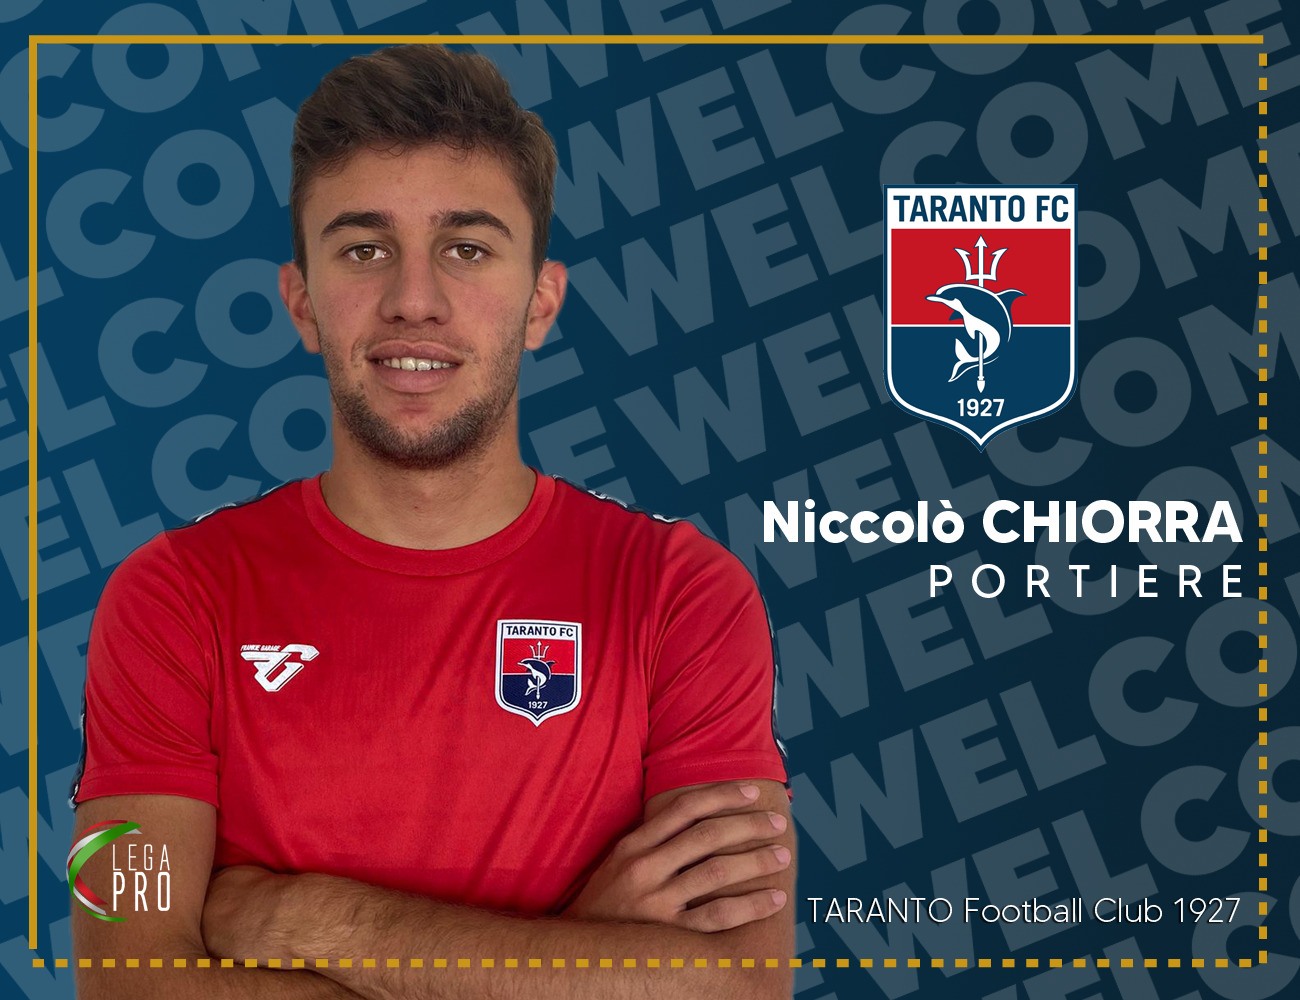 Niccolò Chiorra è un calciatore rossoblù